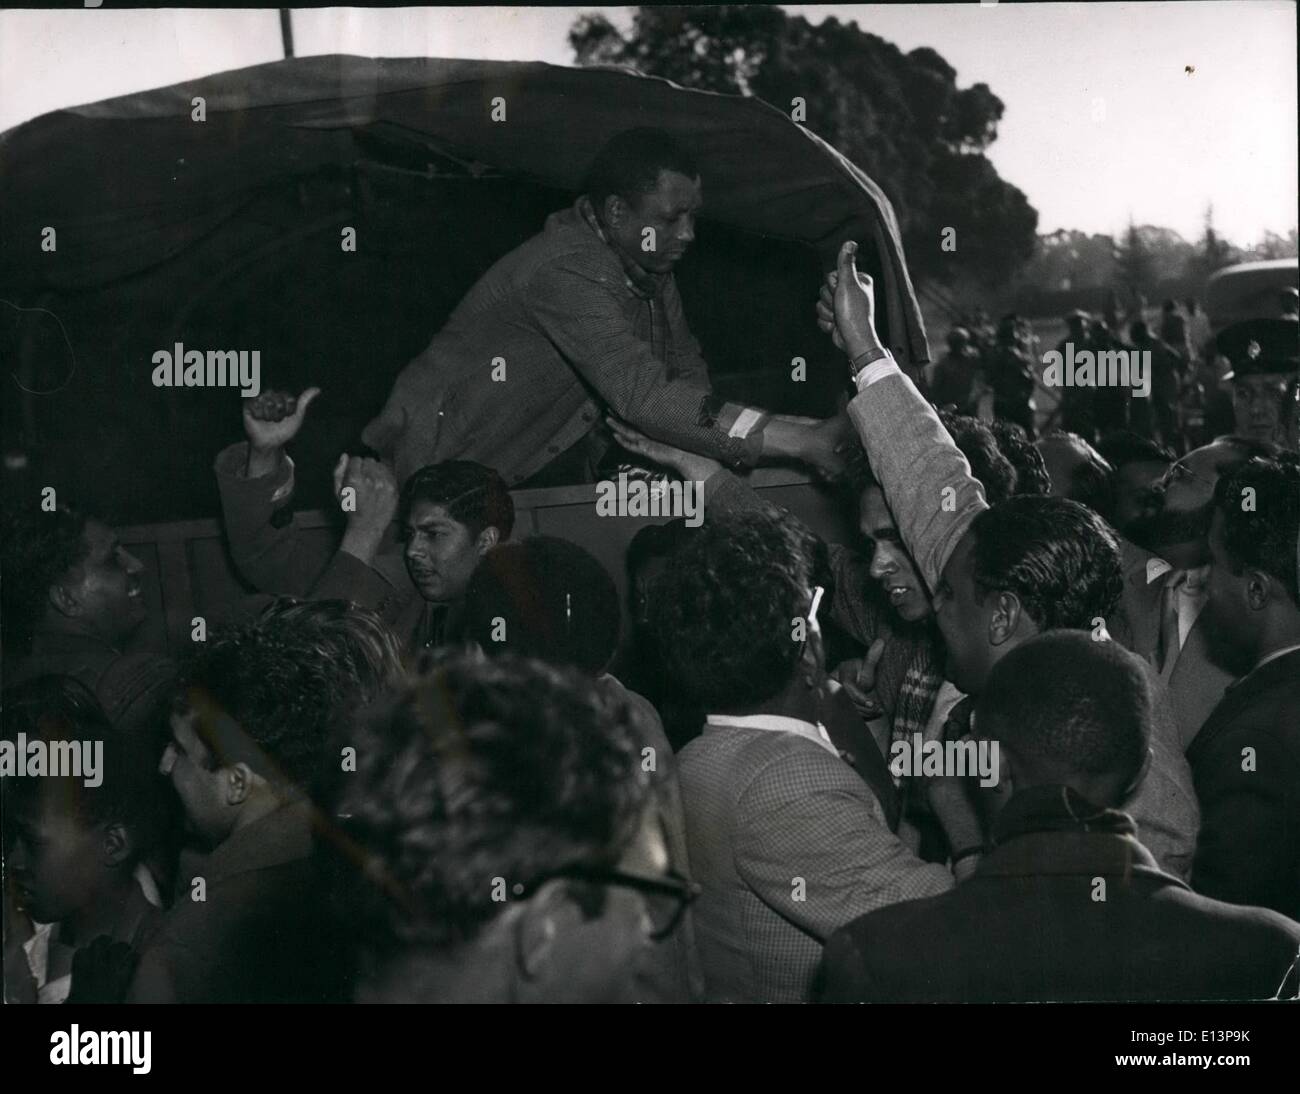 Mar 22, 2012 - Walter Sisulu, segretario generale del Congresso Nazionale Africano, dopo essere stato arrestato in Boksburg ubicazione. A causa del grande numero di simpatizzanti accalcarsi intorno a lui, egli è stato rimosso da un furgone chiuso dopo che questa è stata scattata la fotografia. Foto Stock